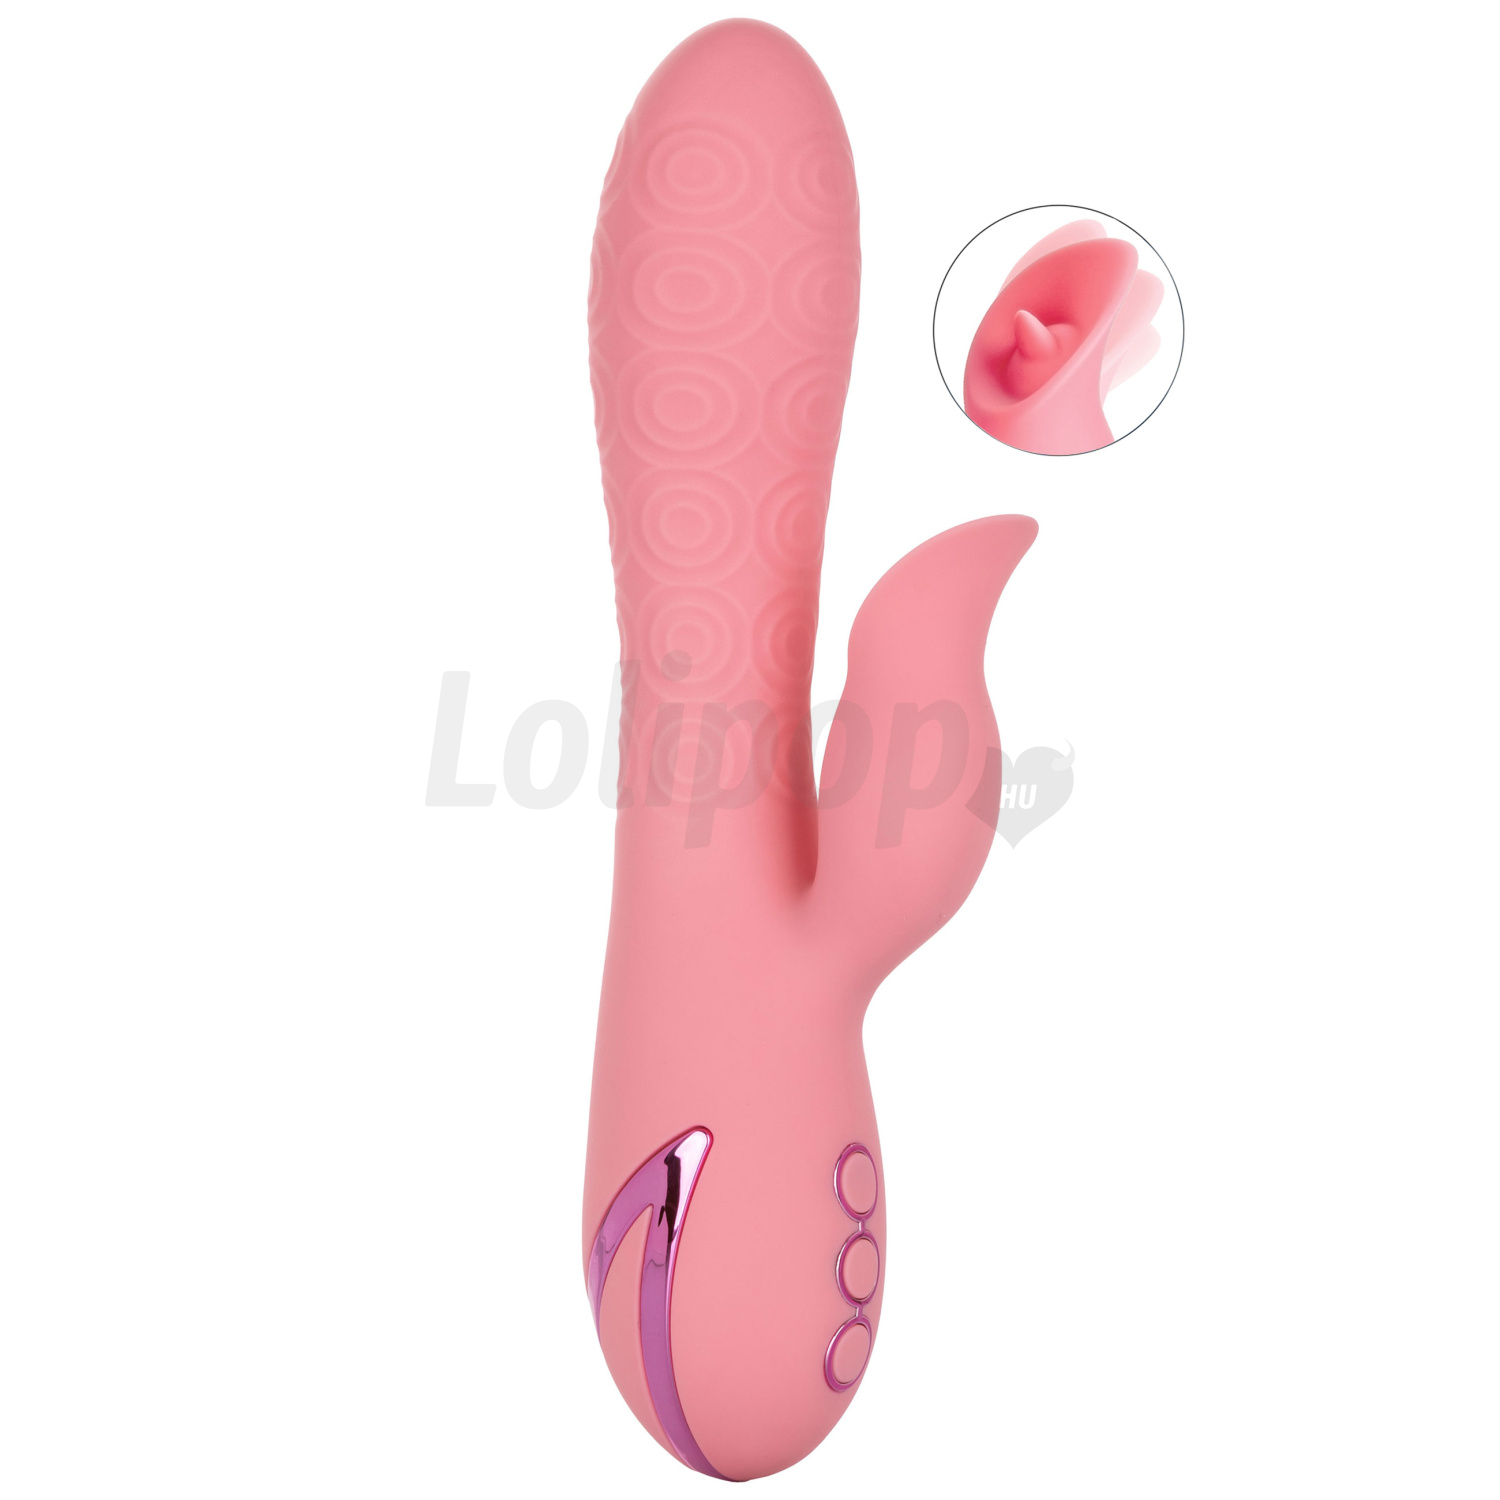 Pasadena Player újratölthető klitorisz vibrátor forgással